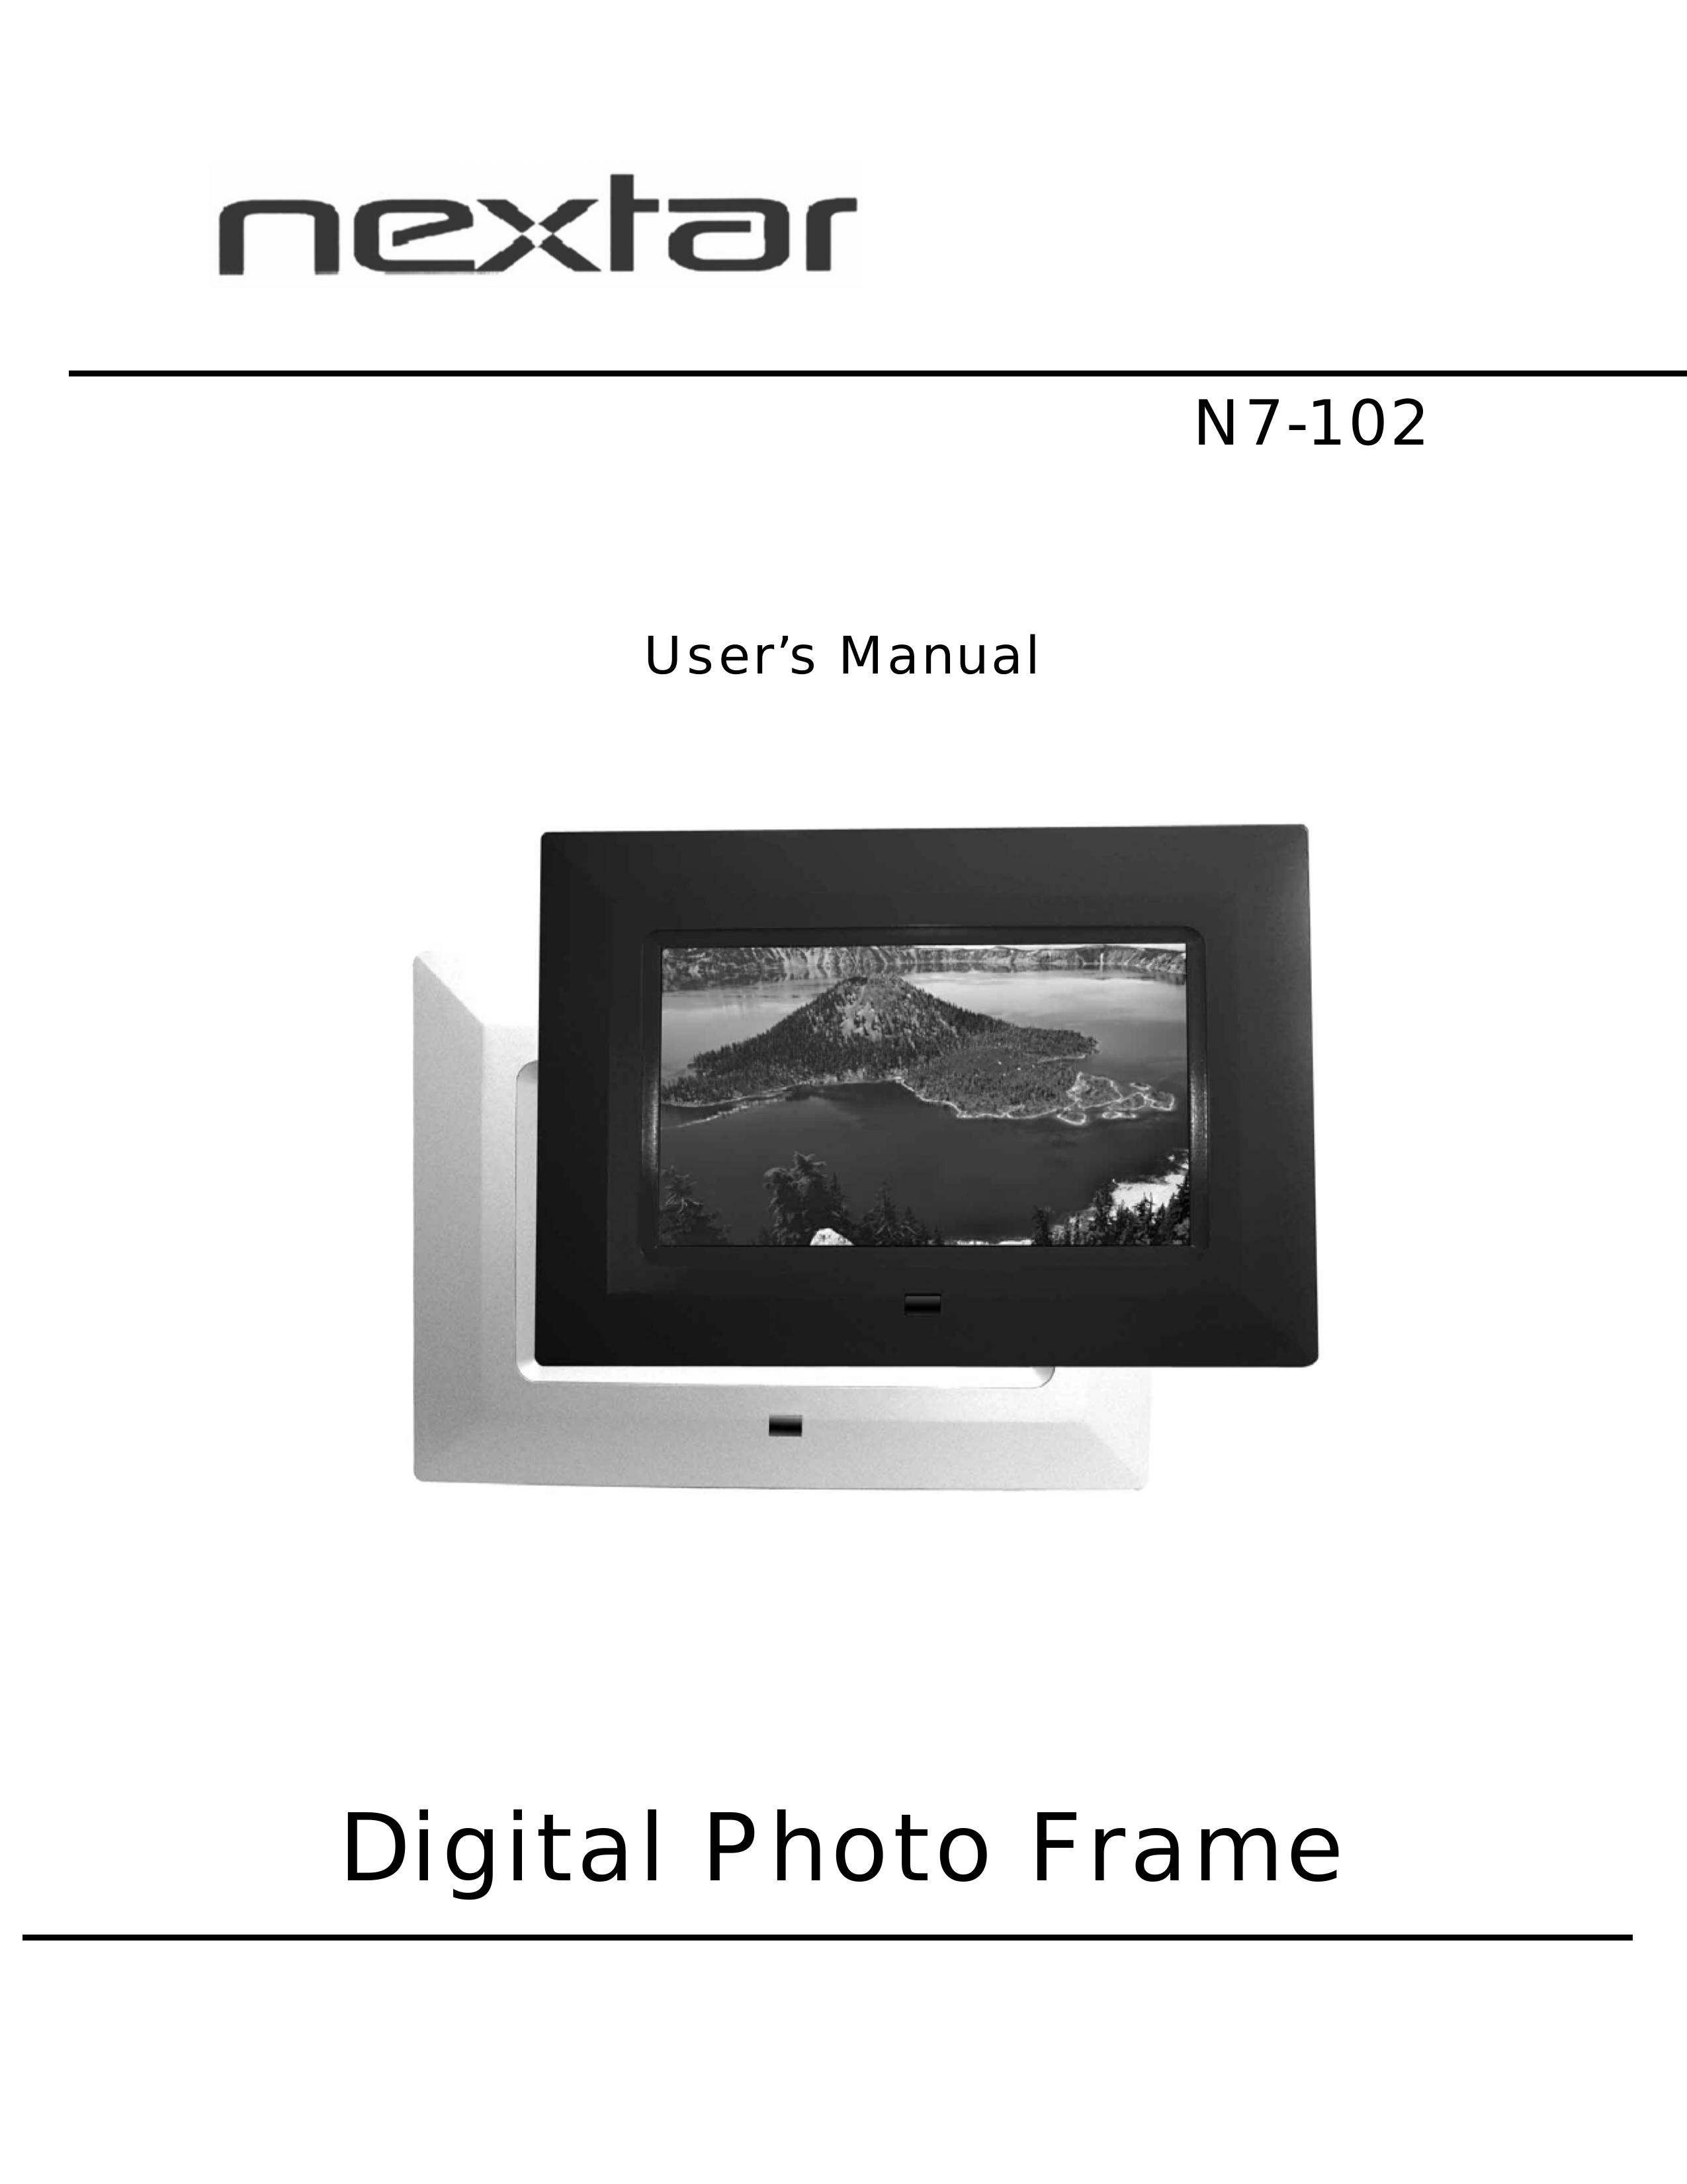 Nextar N7-102 Digital Photo Frame User Manual